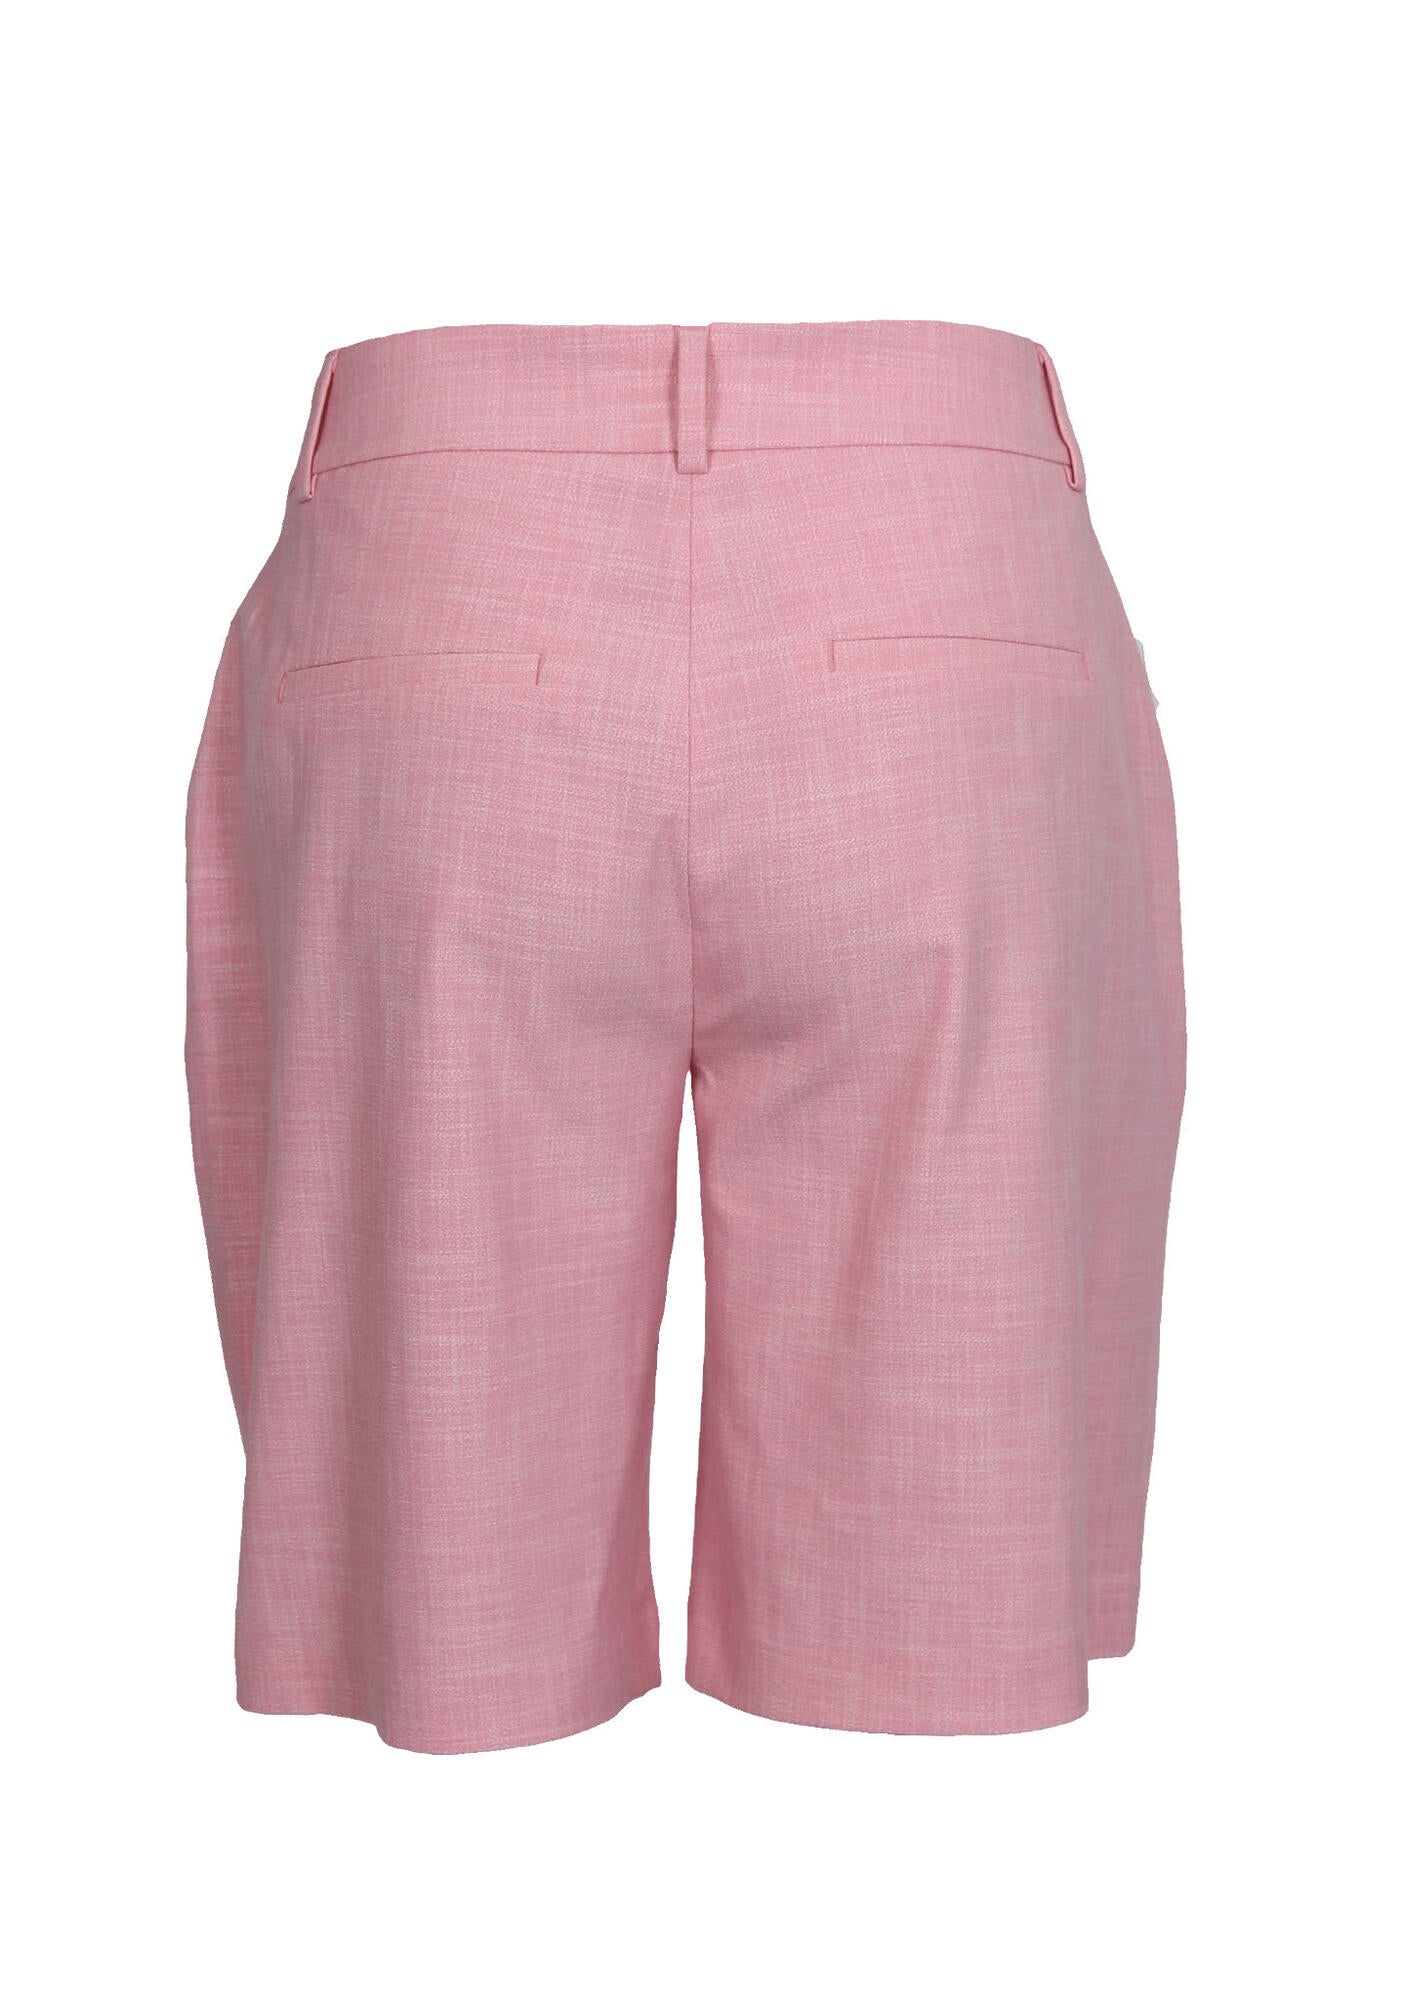 I SAY Pink Rimini shorts